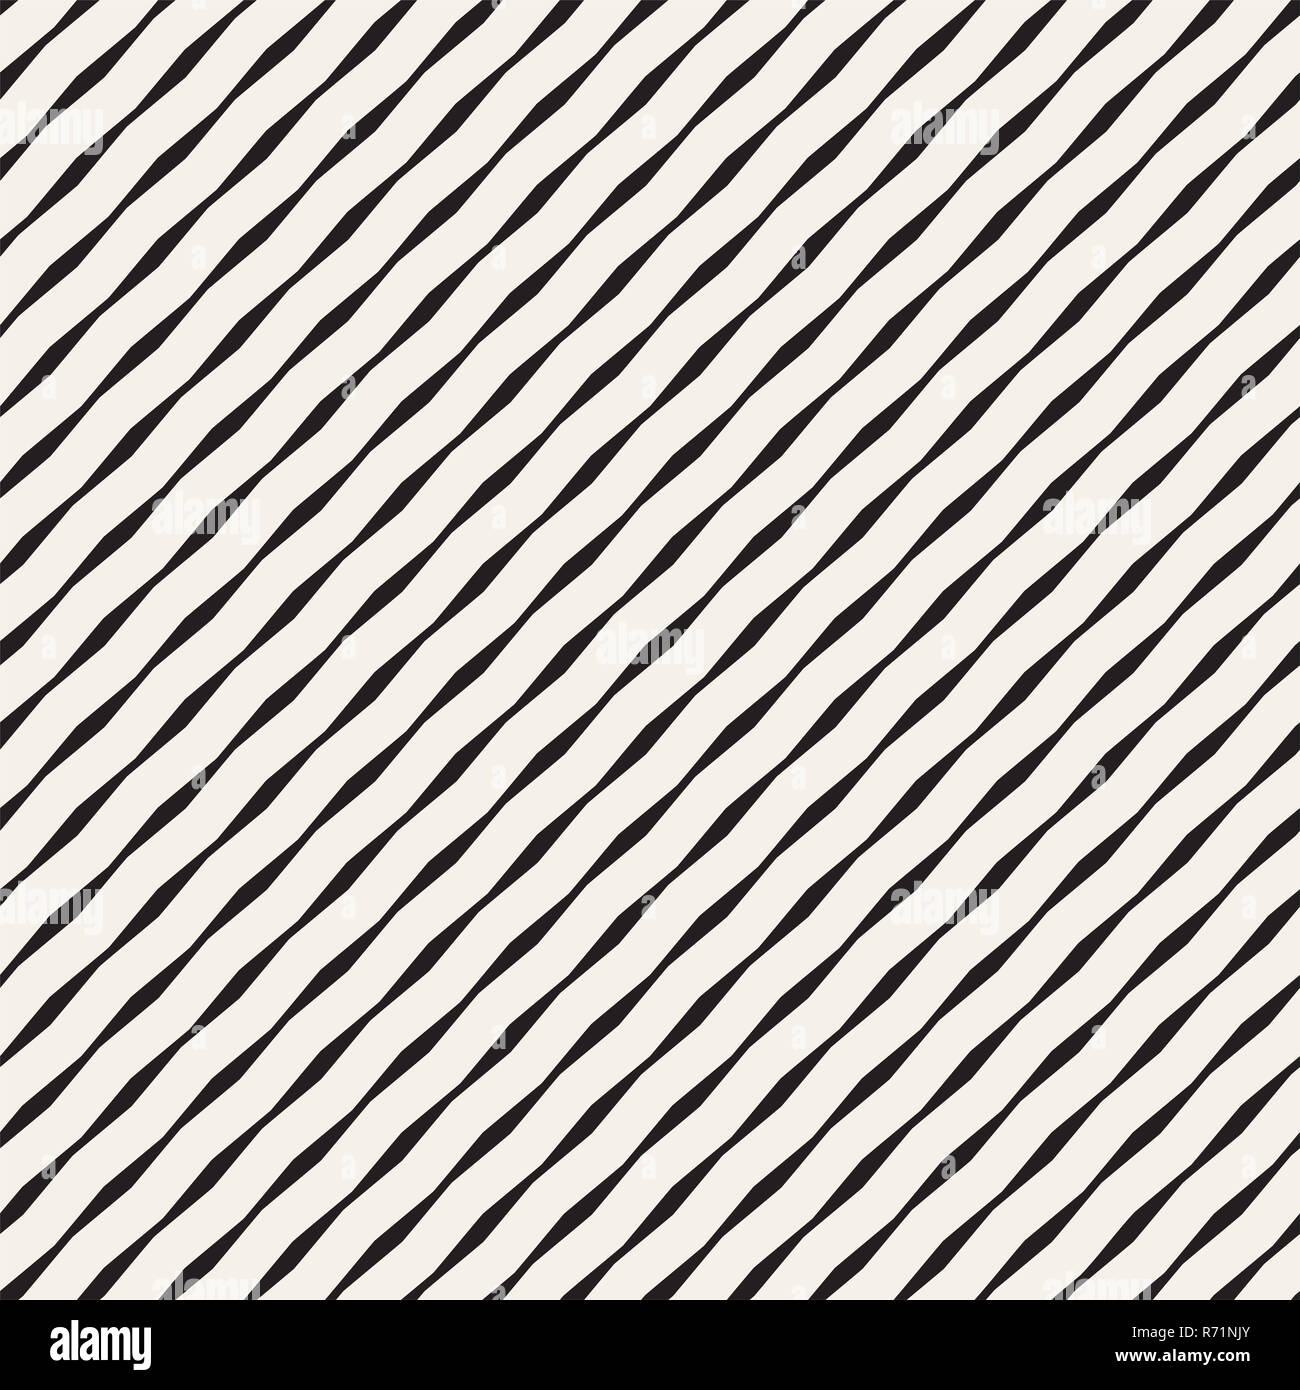 Nahtlose schwarz-weiß Hand gezeichnete Wellenlinien Vektormuster Stockfoto